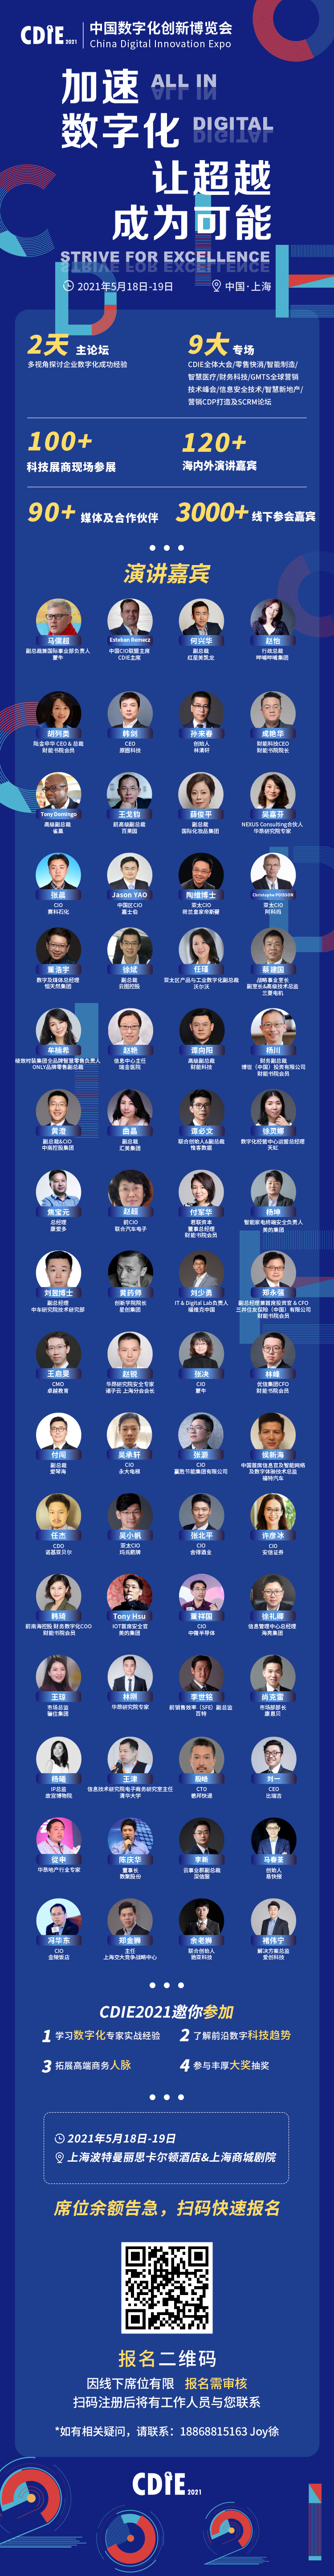 第七届中国数字化创新博览会